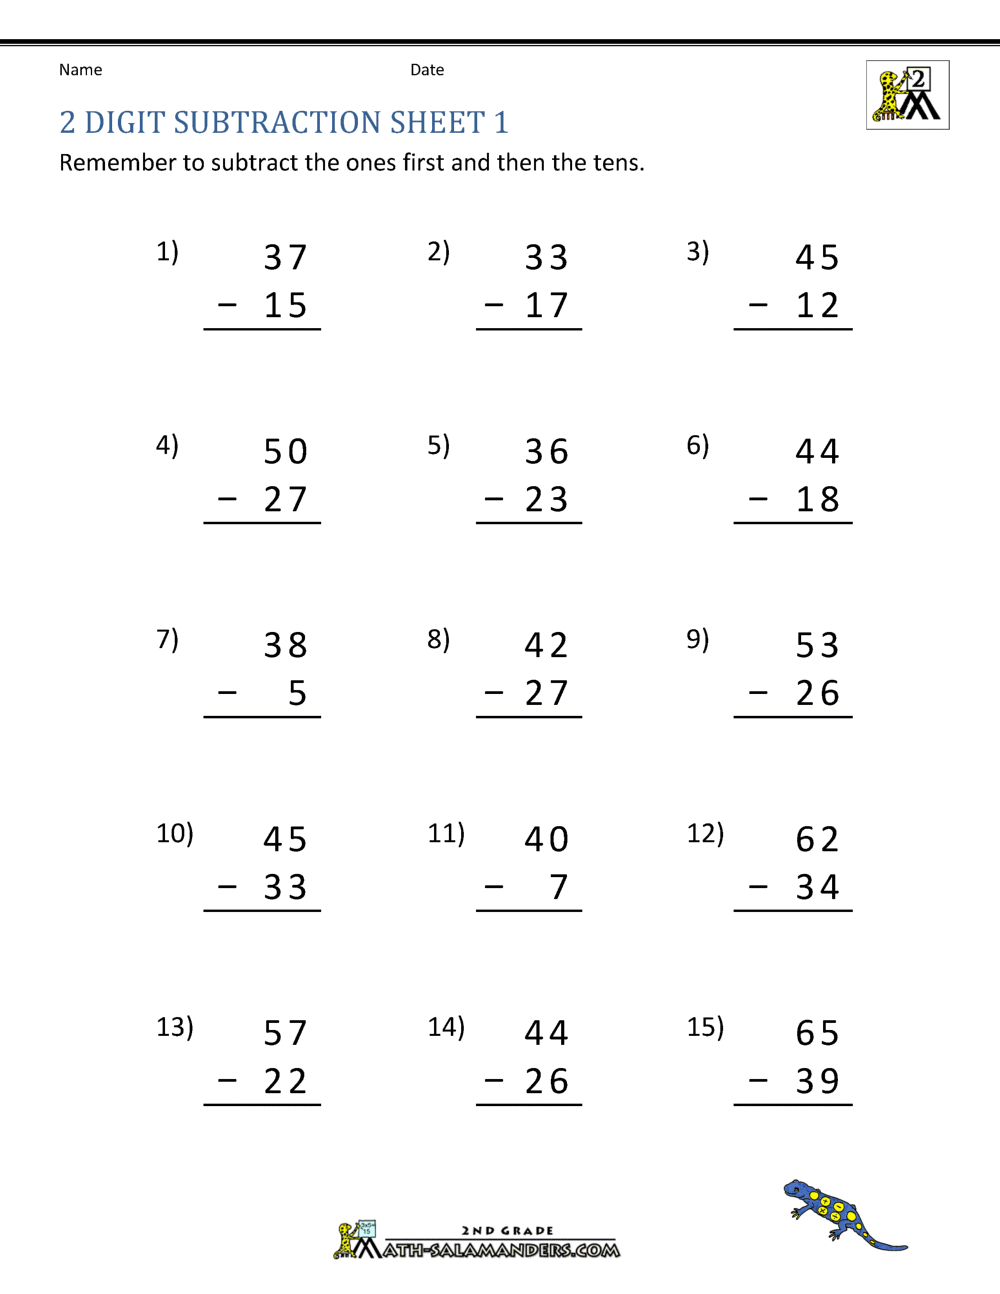 subtraction-3-digit-numbers-worksheet